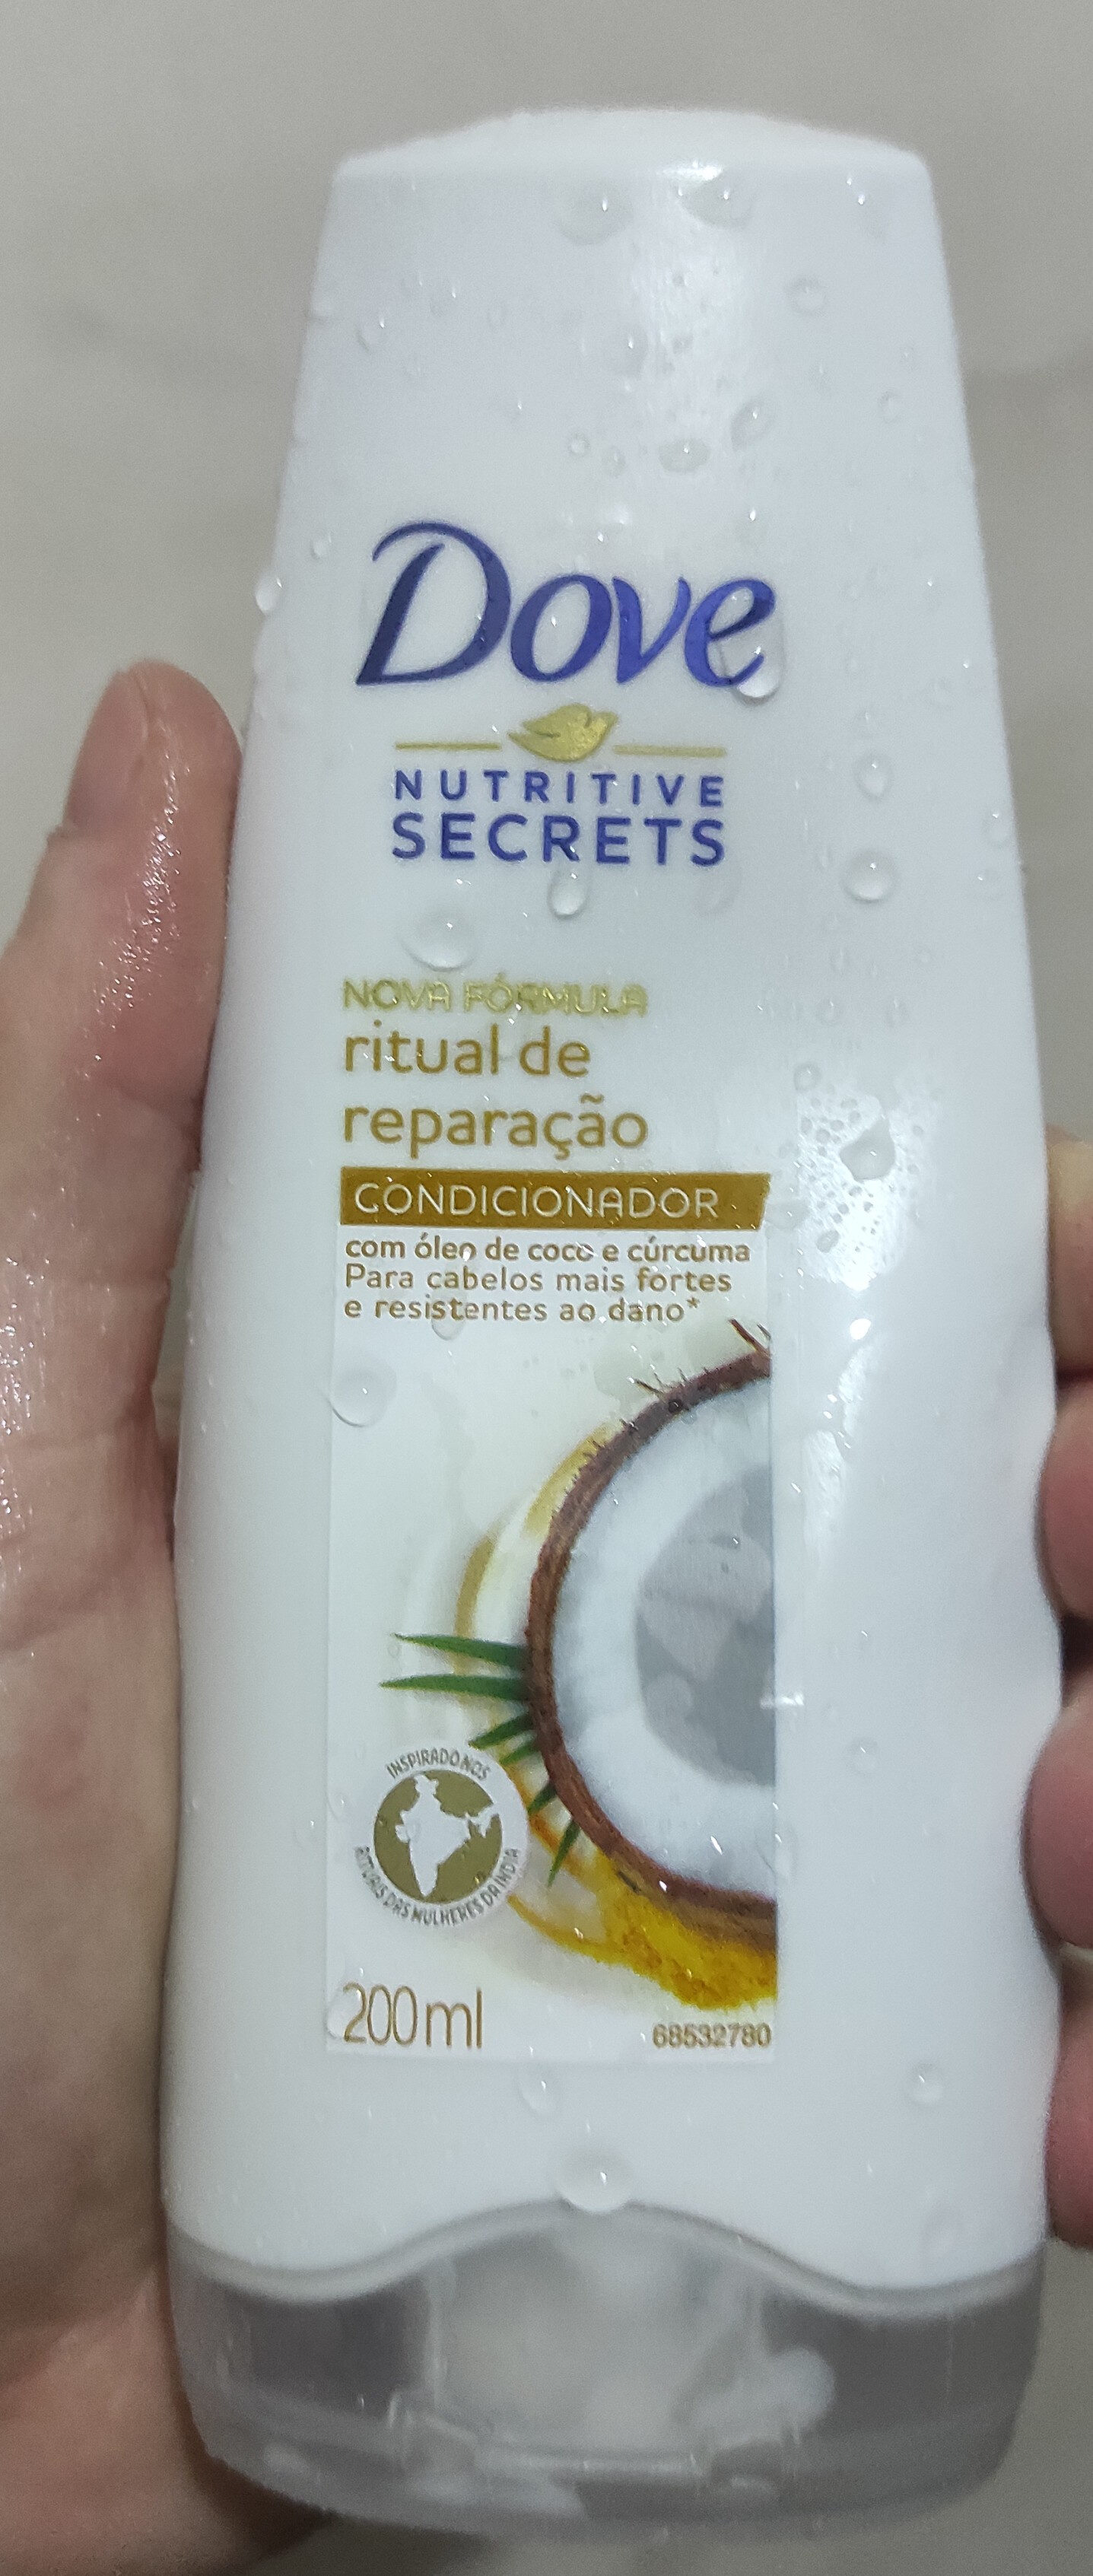 Shampoo Dove Ritual de Reparação - 製品 - pt